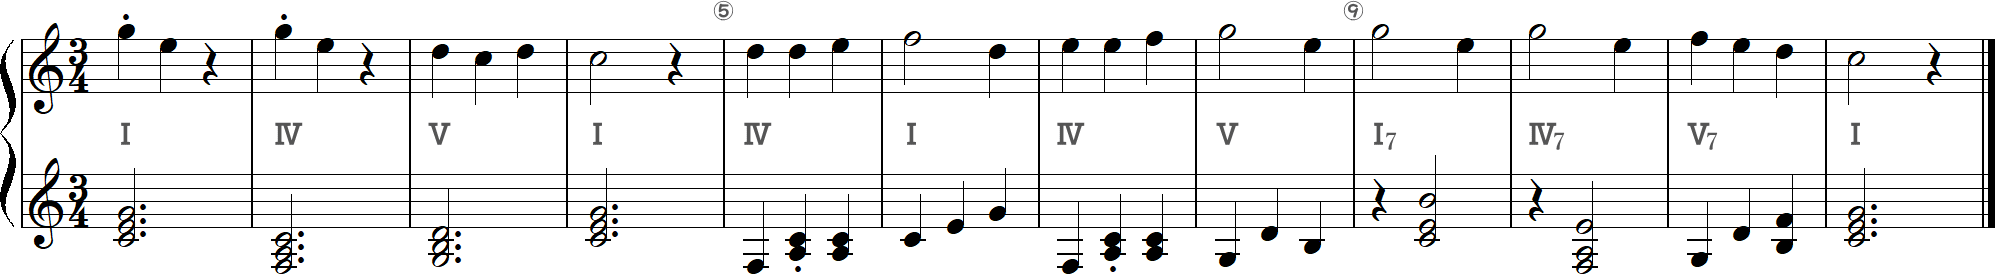 カッコウの1～12小節目（ハ長調）の譜面